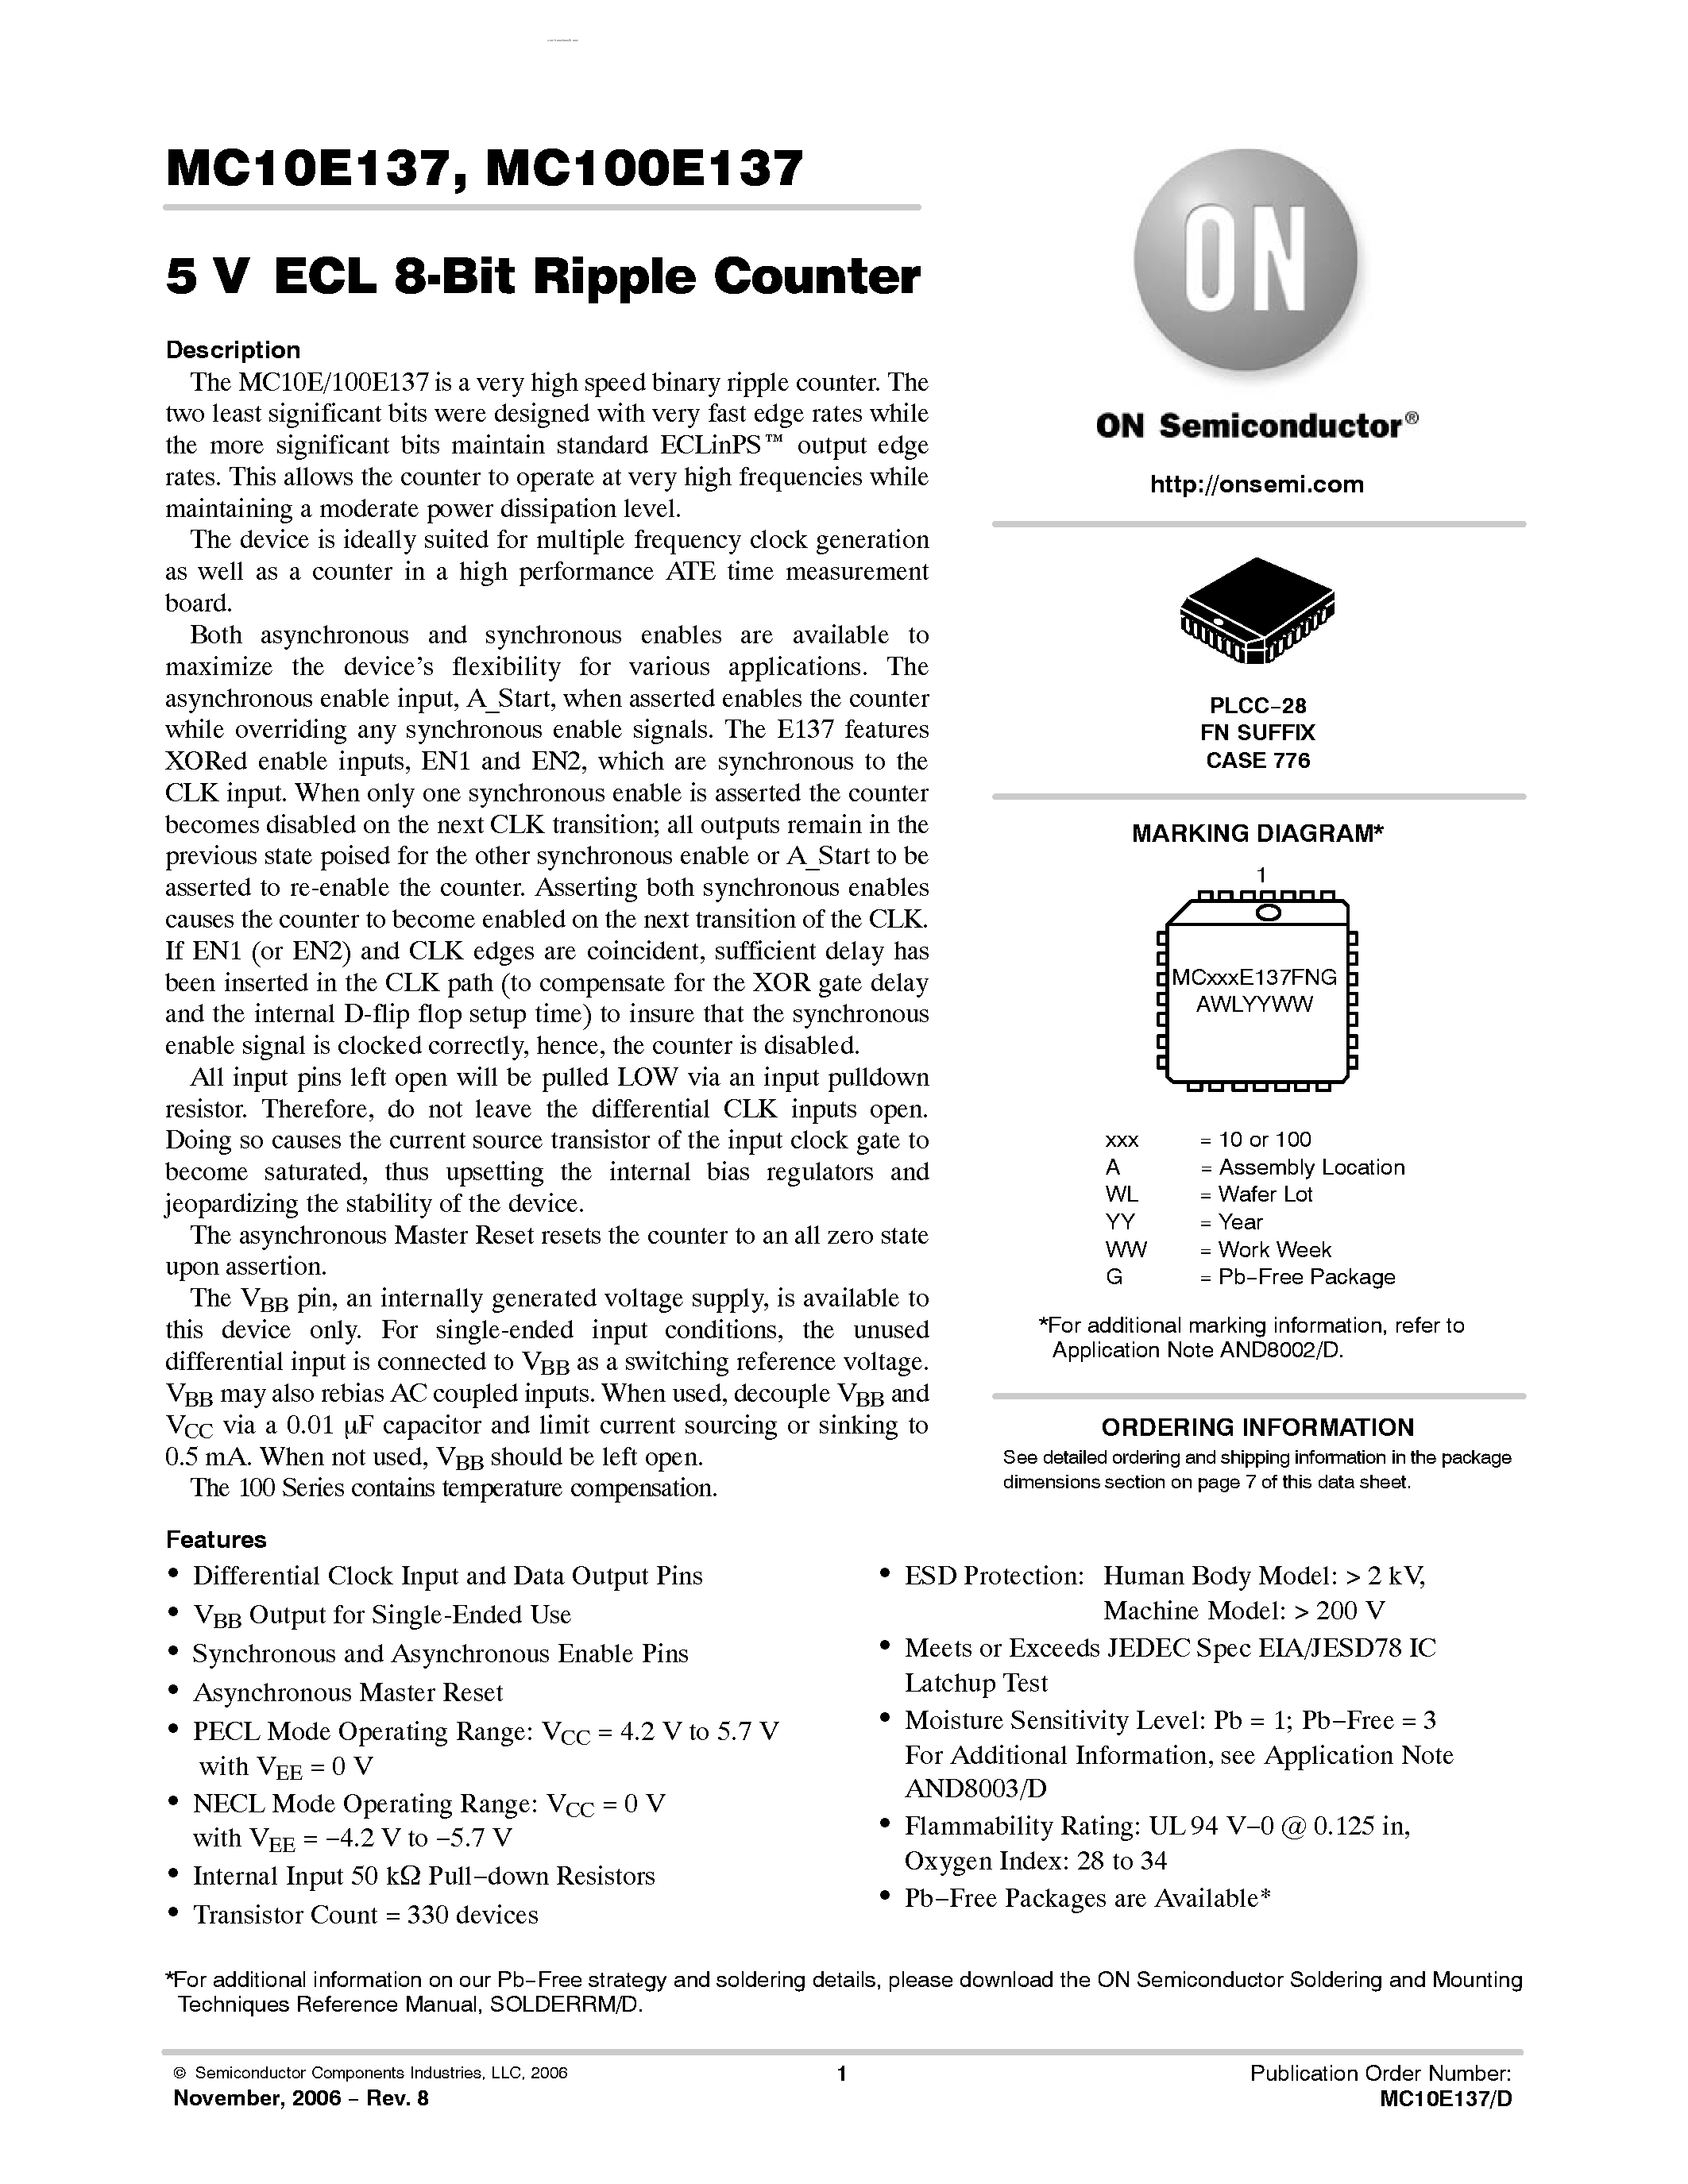 Datasheet MC100E137 - 8-BIT RIPPLE COUNTER page 1